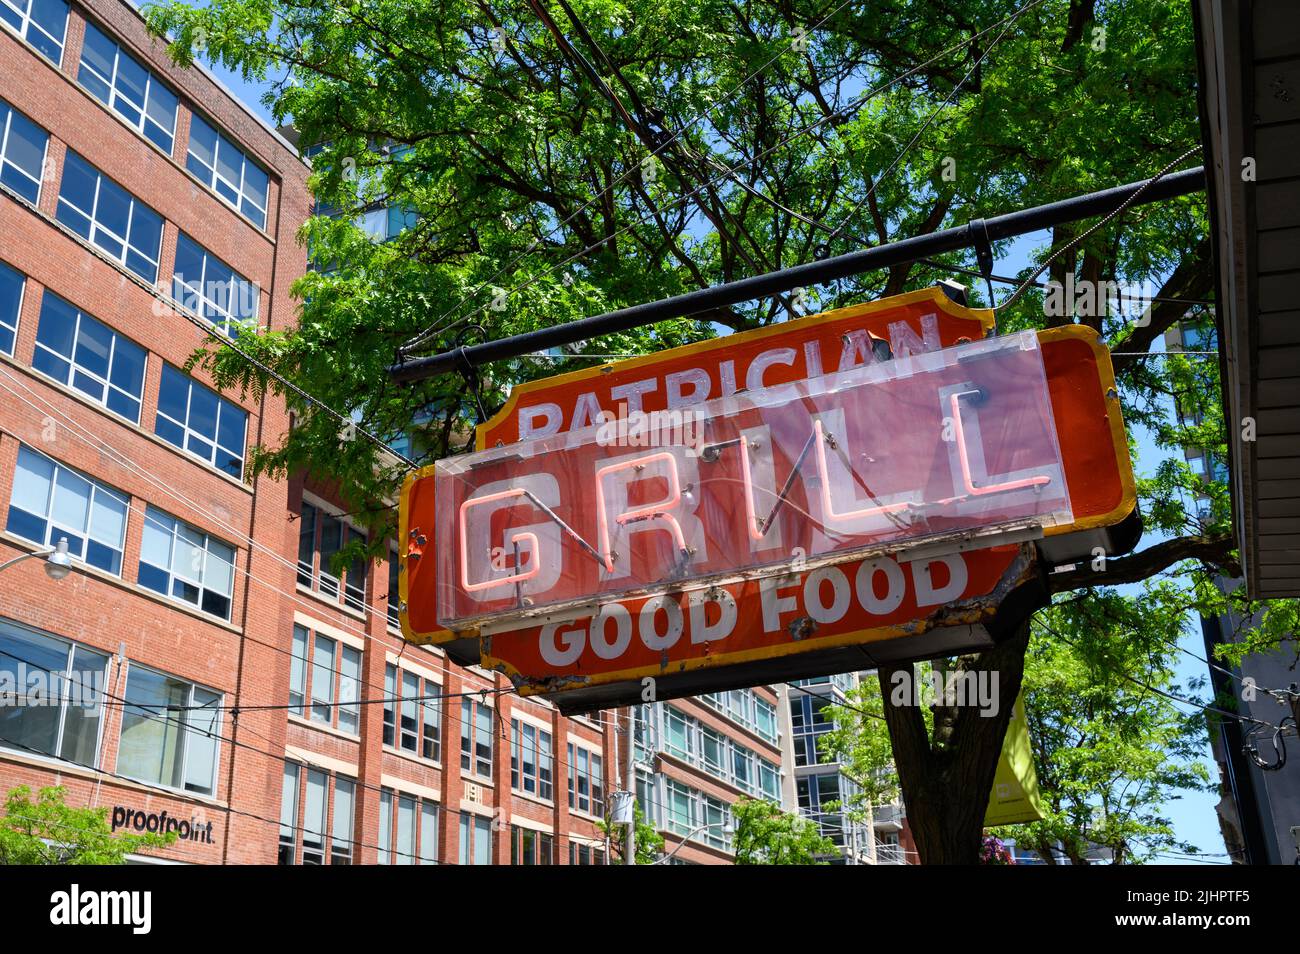 Ein abgenutztes und verwittertes, neonfarbenes und handbemaltes Restaurantschild für Patrician Grill, das „Good Food“ in King St East, Toronto, Ontario, Kanada, fördert. Stockfoto